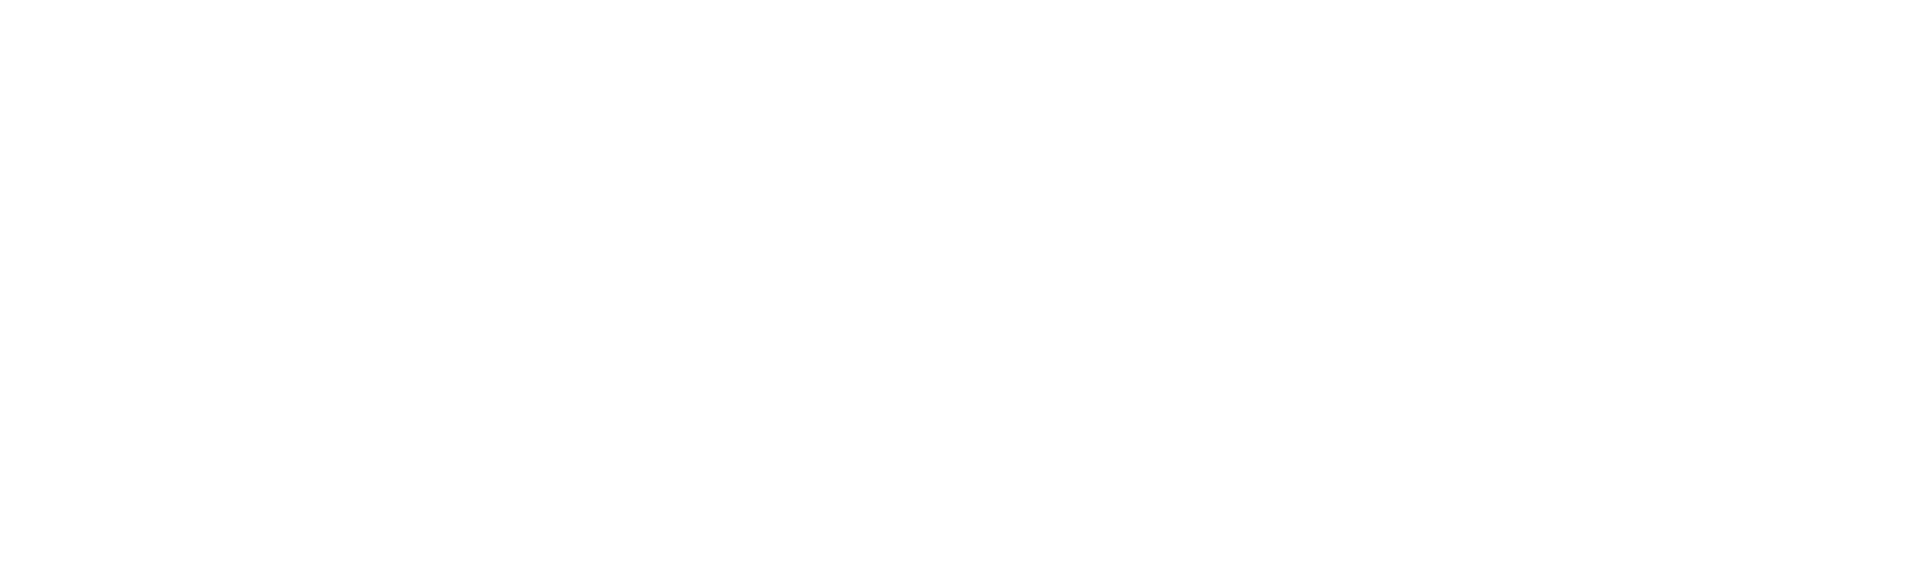 pedalefeltrino_white